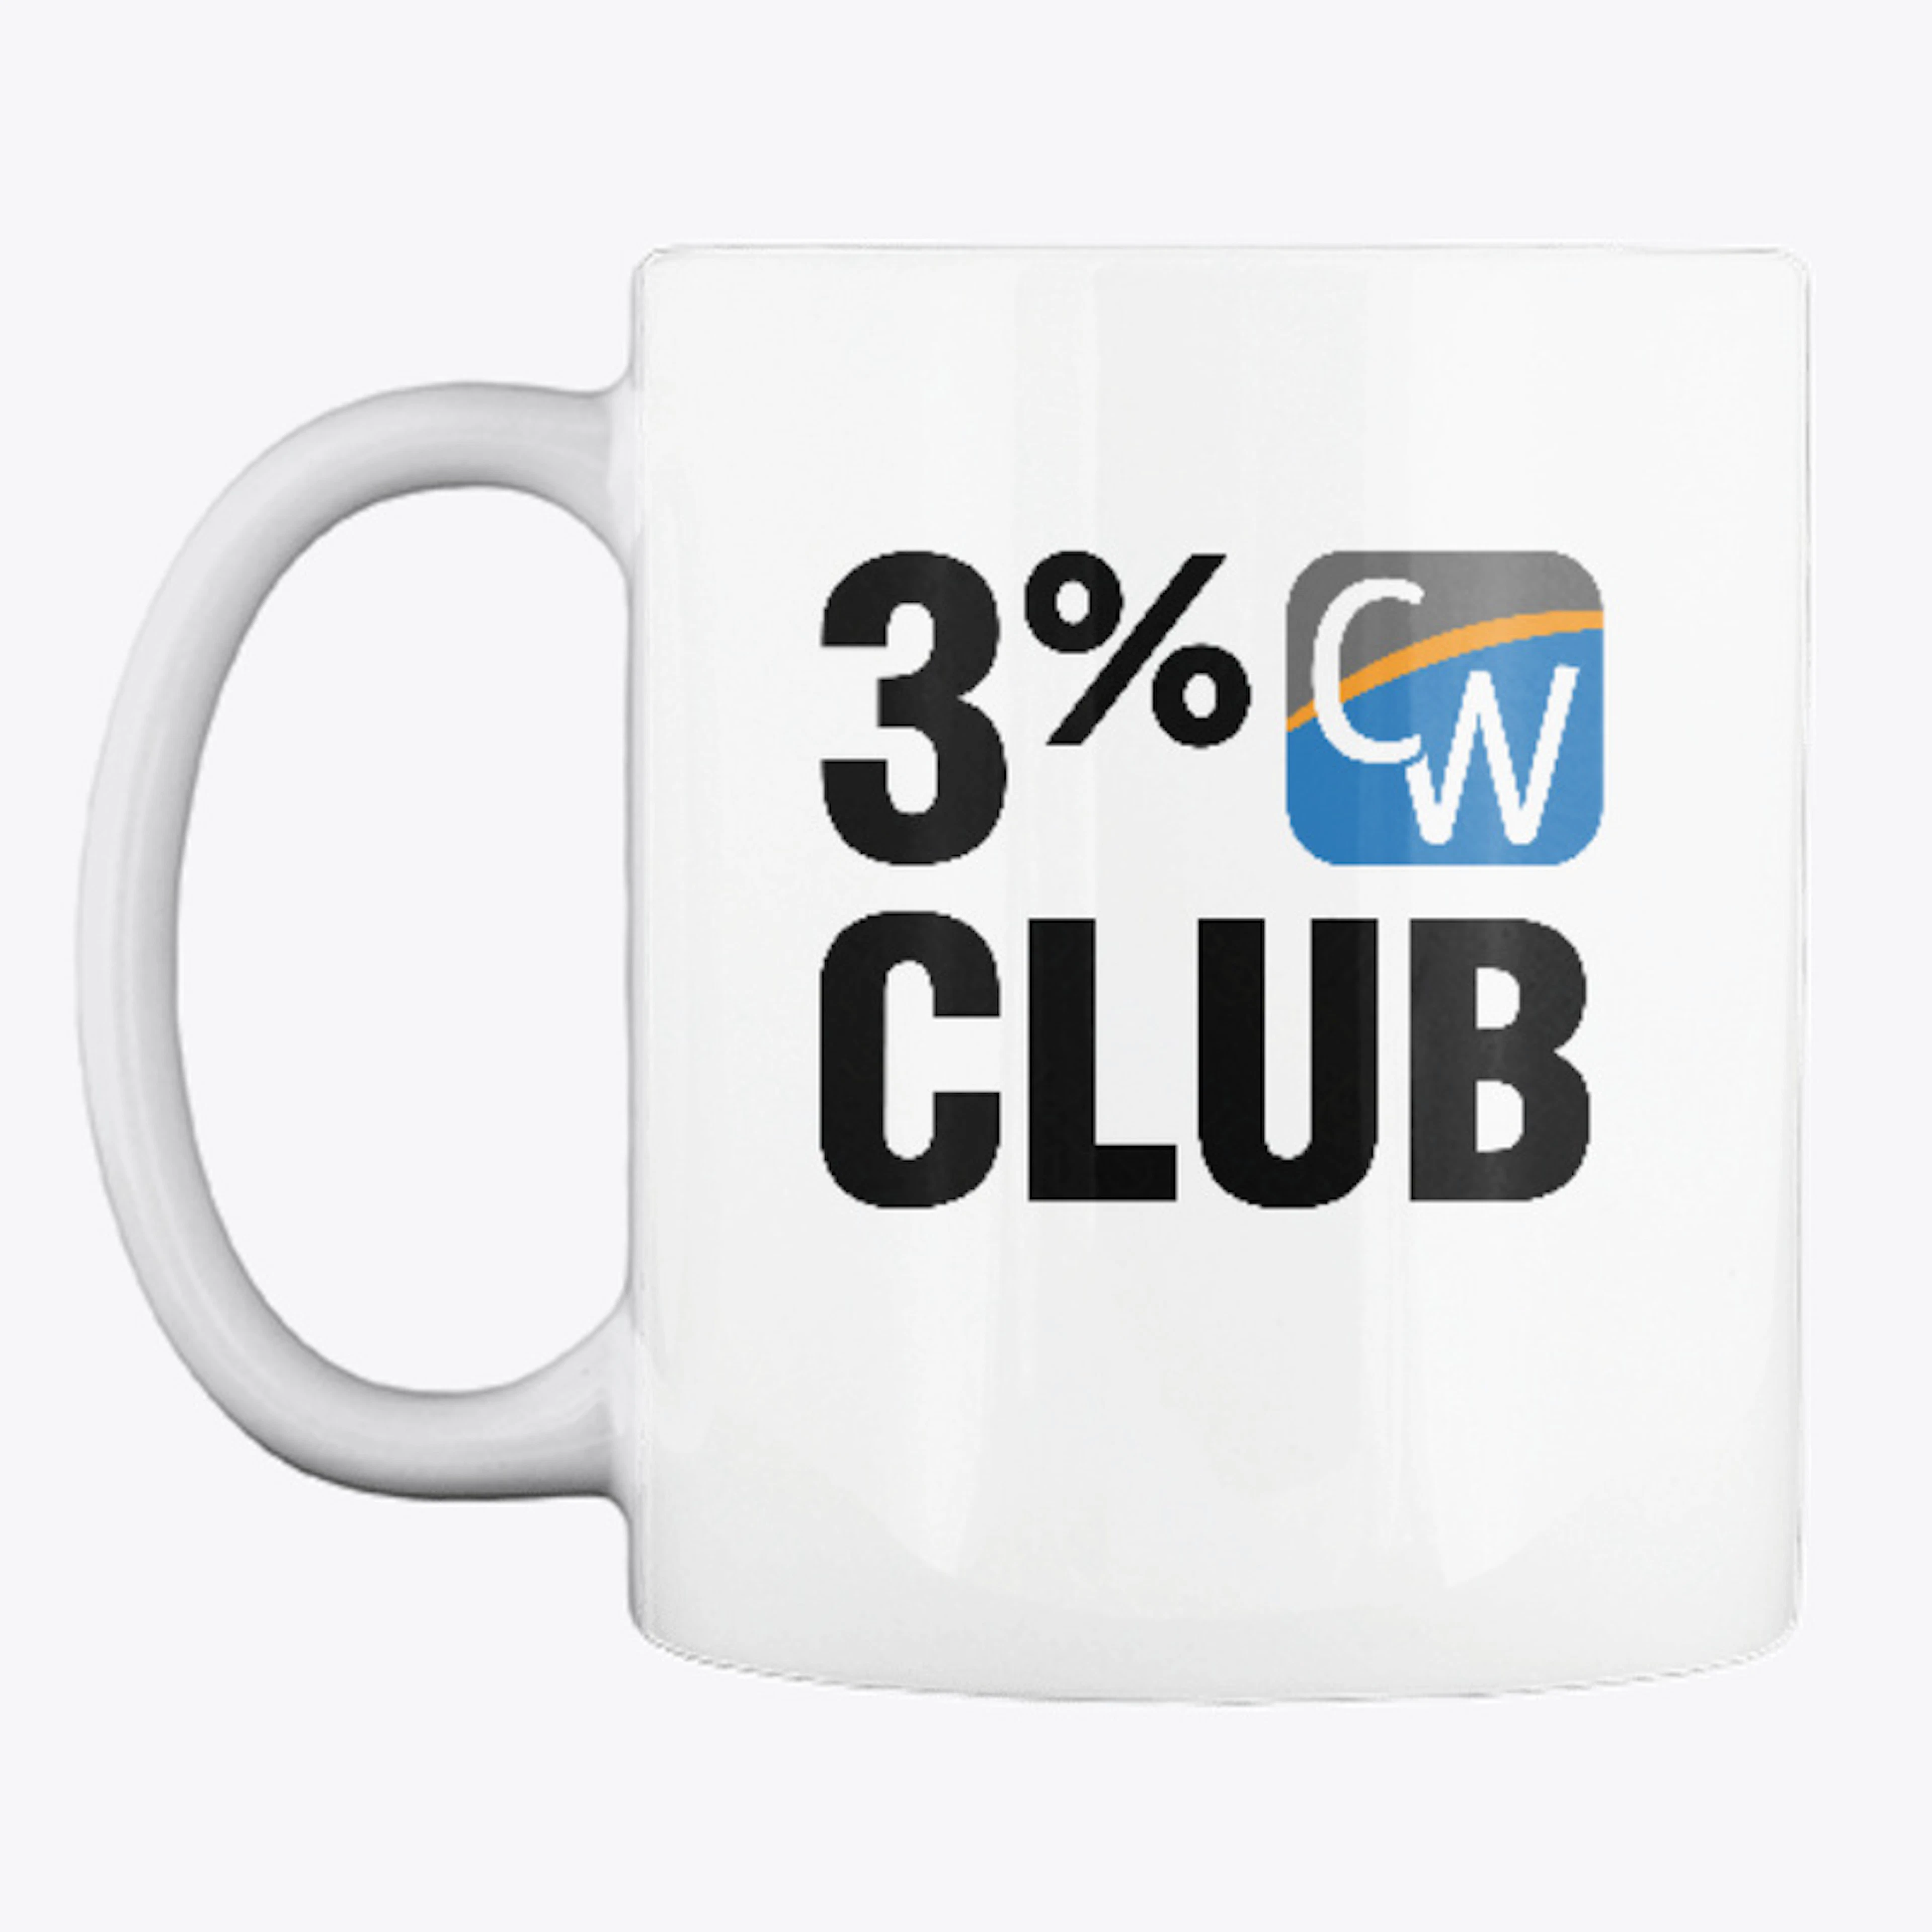 "3% Club" Mug